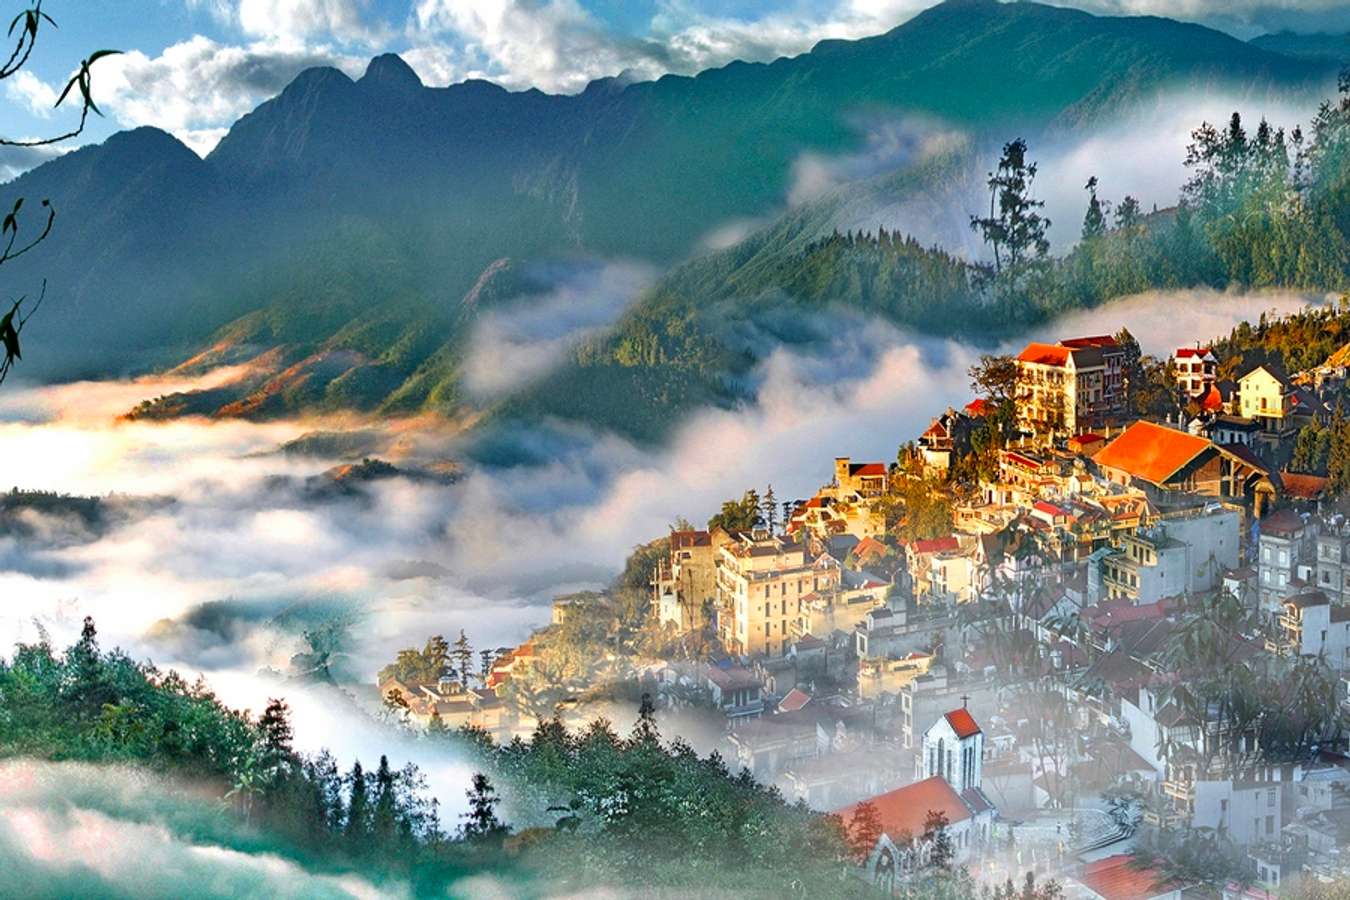 Núi Hàm Rồng - Ngọn núi hình đầu rồng nổi tiếng bậc nhất tại thành phố mờ  sương